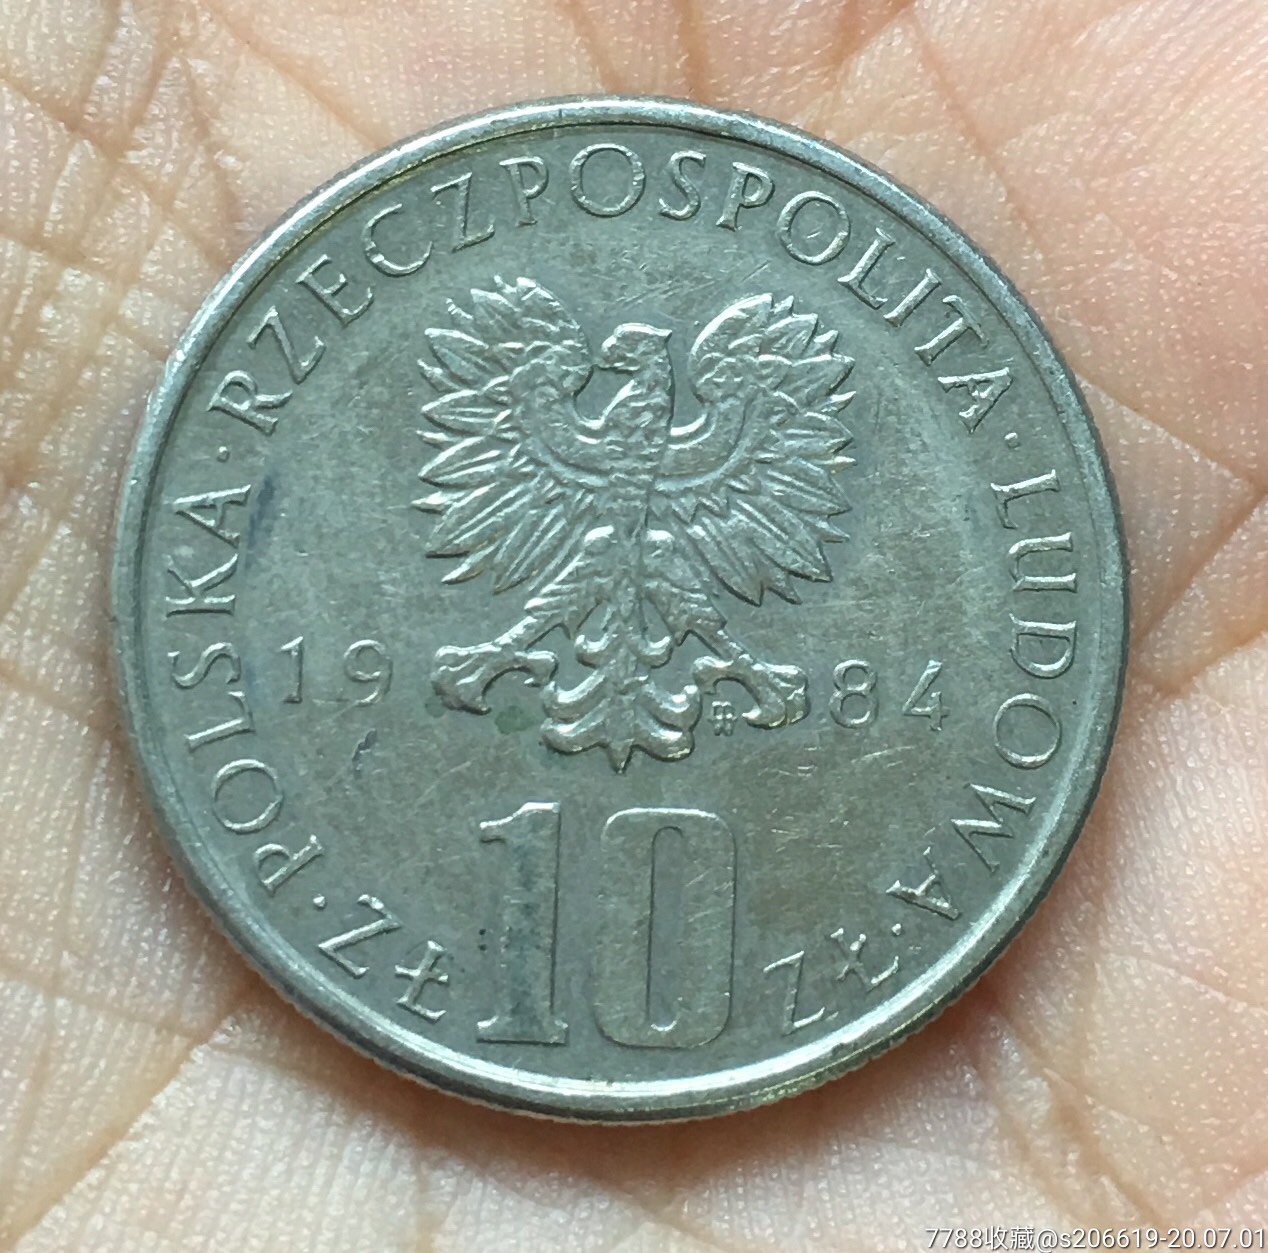 波兰一元硬币等于多少人民币,波兰一元硬币等于多少人民币汇率